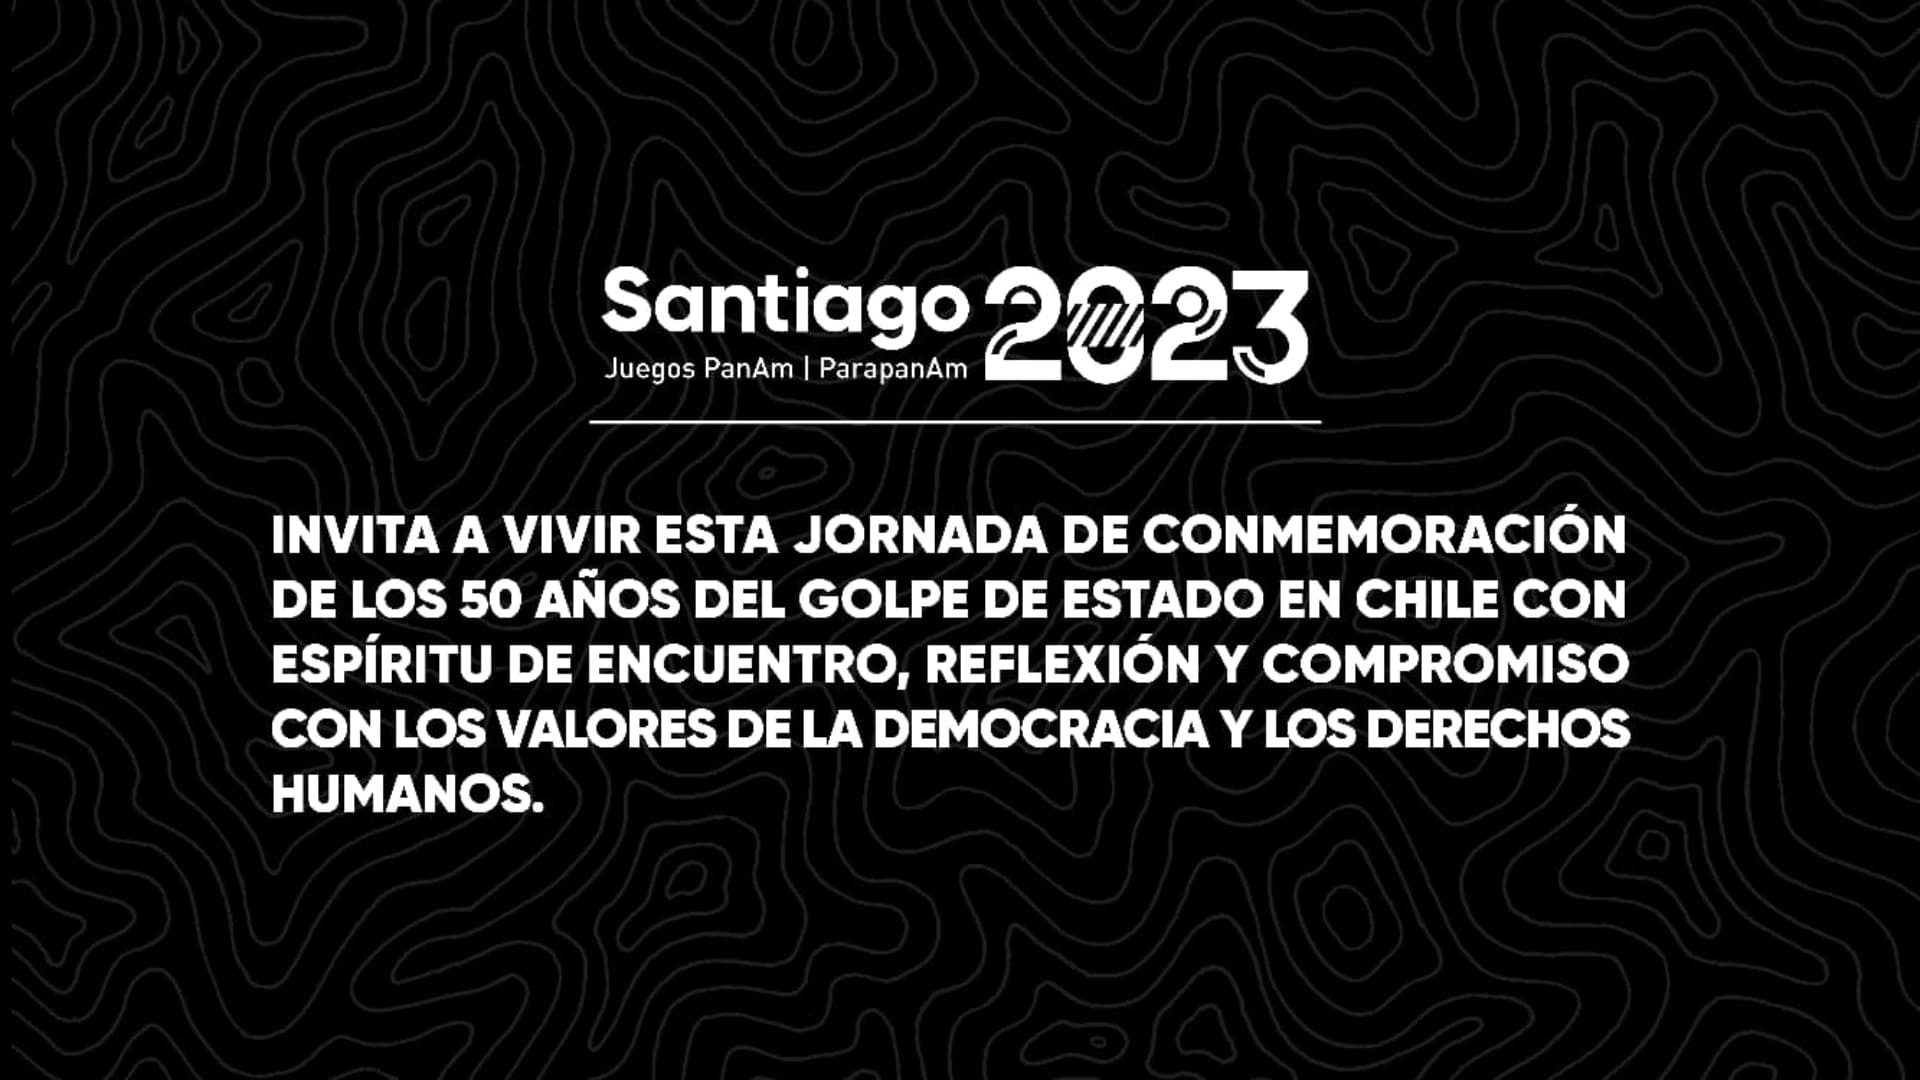 Mensaje de Santiago 2023 sobre este 11 de septiembre. (Foto: Santiago 2023).